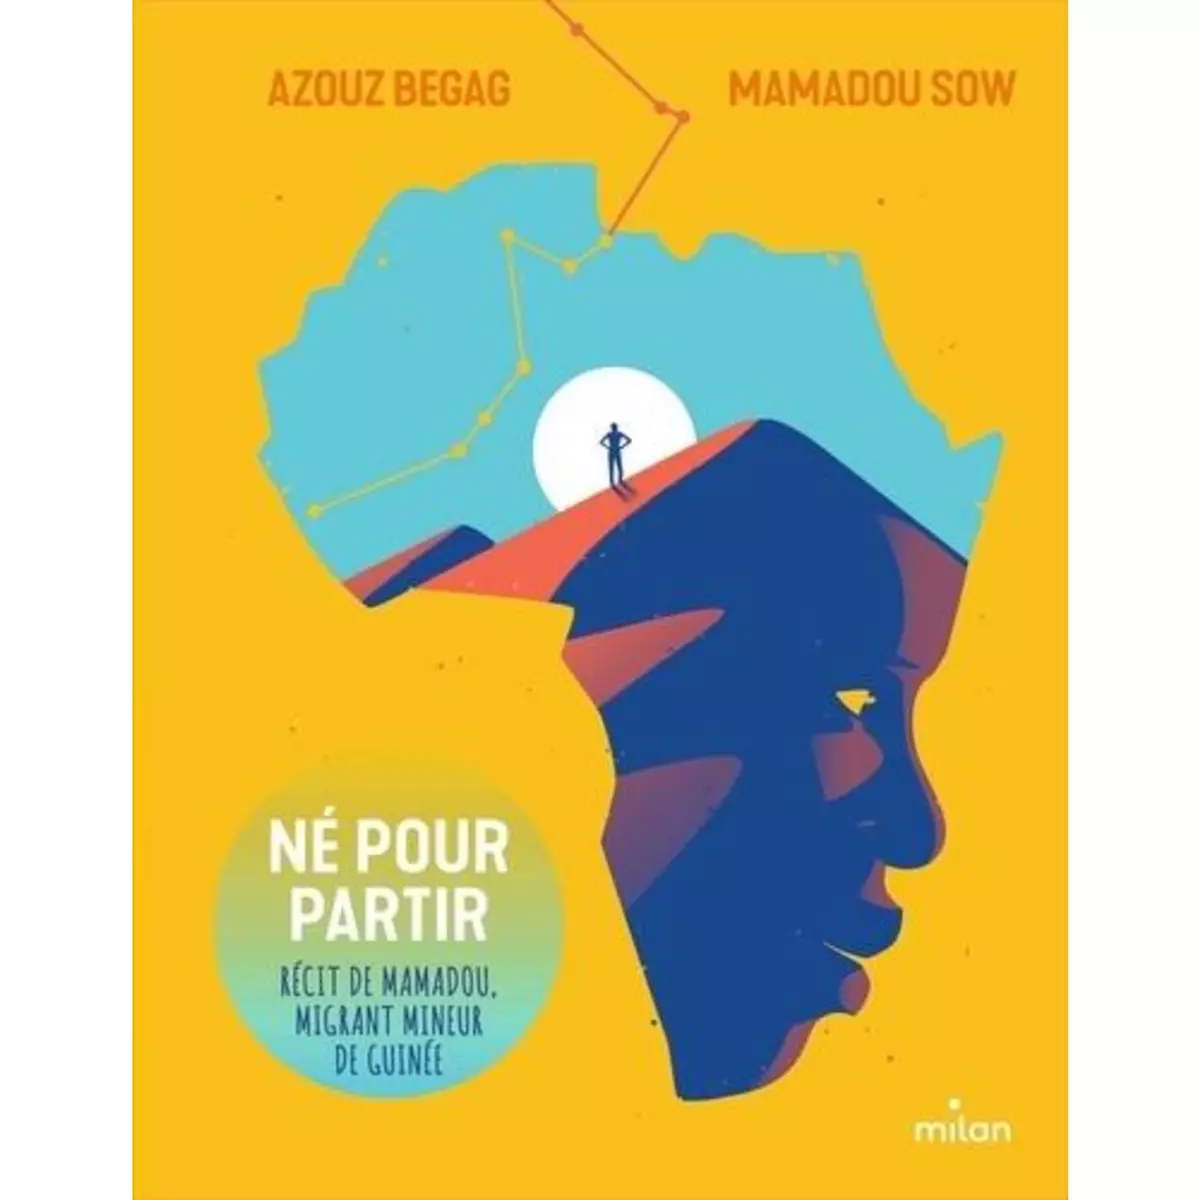  NE POUR PARTIR. RECIT DE MAMADOU, MIGRANT MINEUR DE GUINEE, Begag Azouz